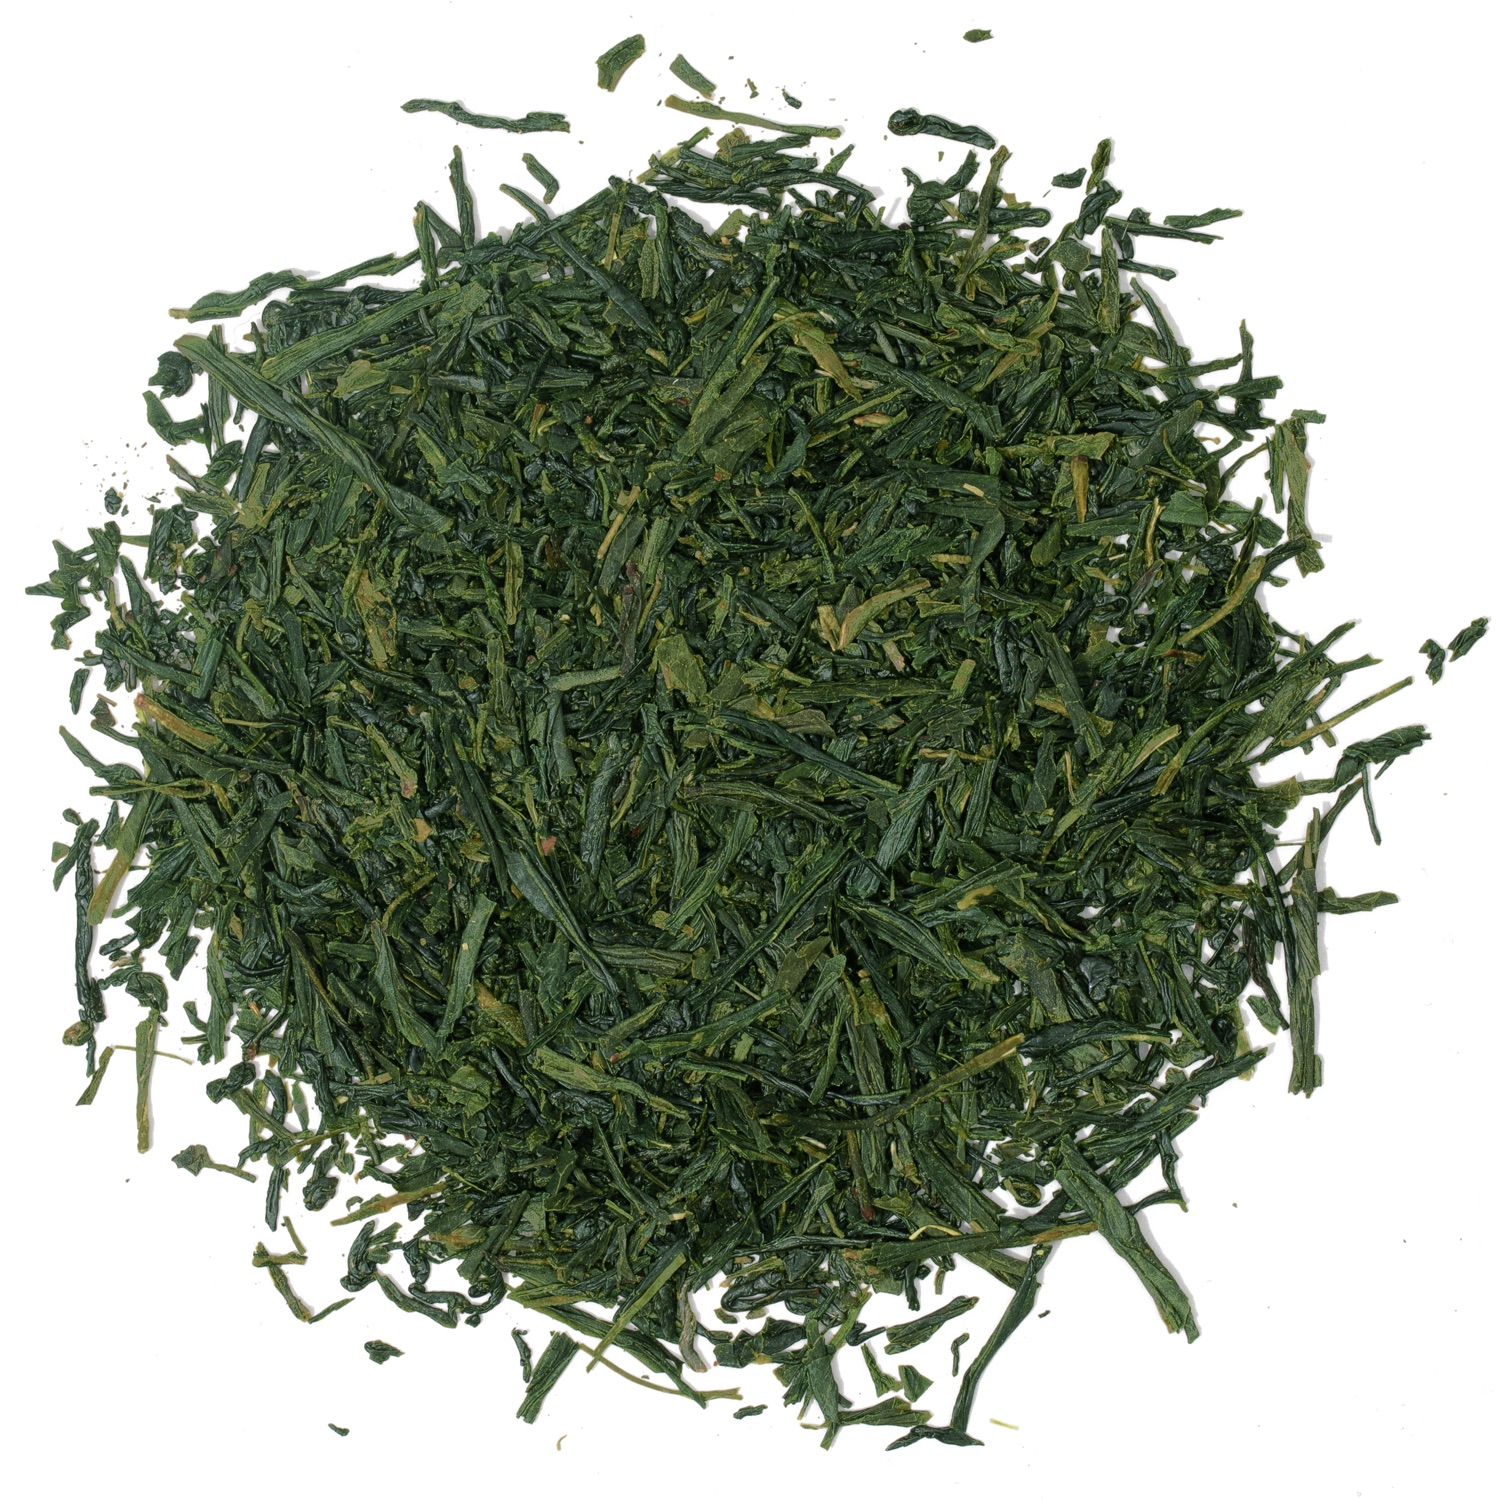 Splash of loose leaf green tea.